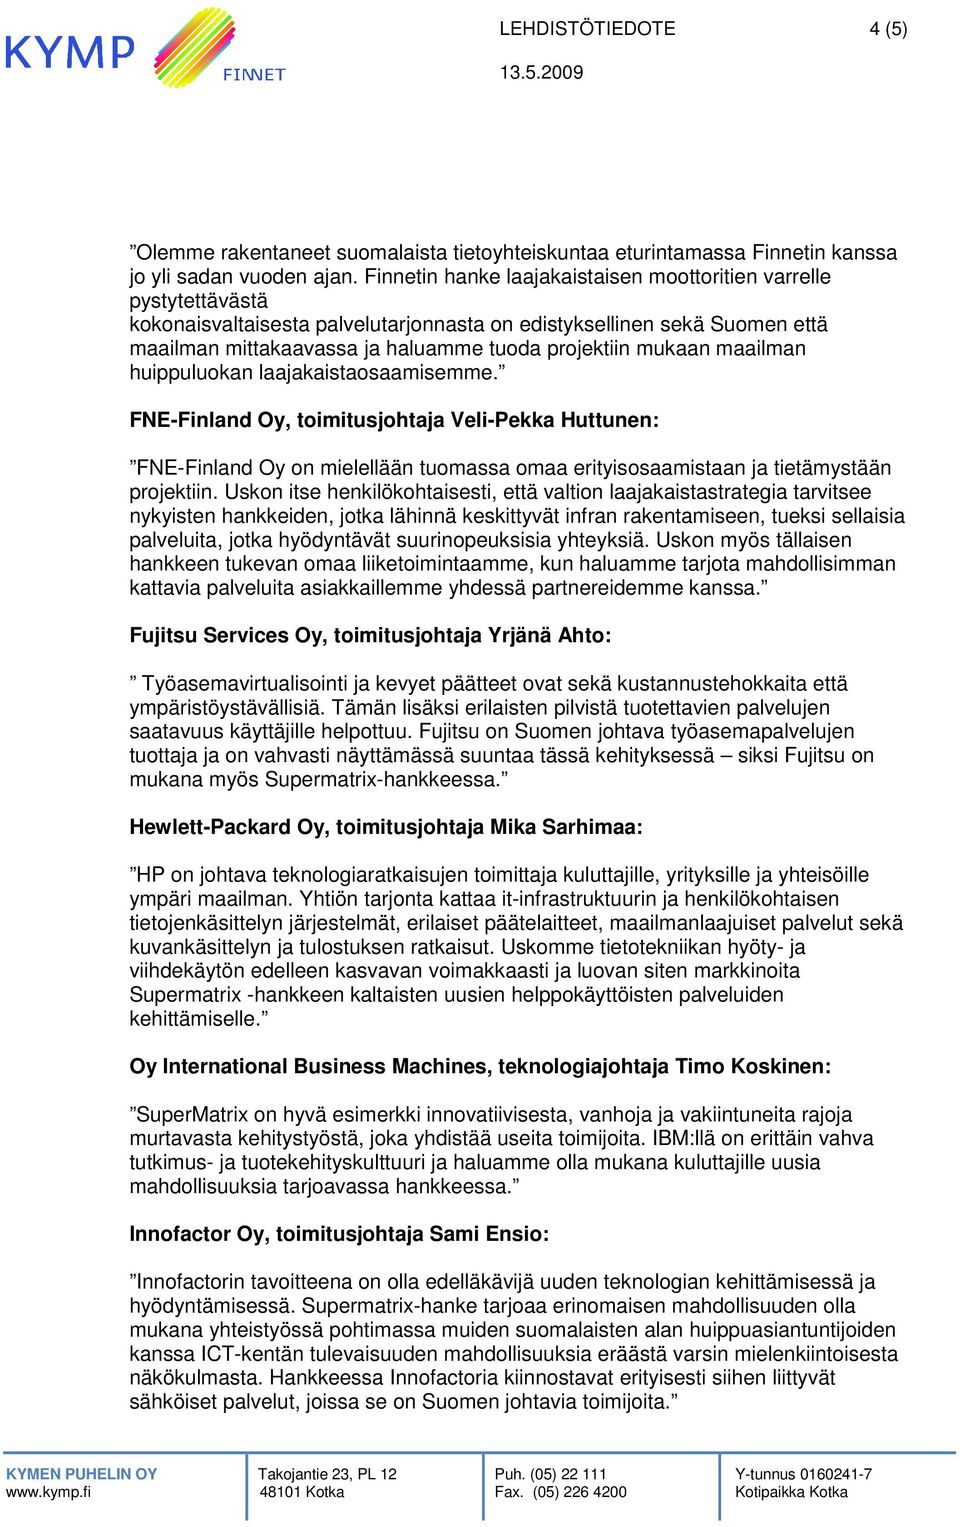 mukaan maailman huippuluokan laajakaistaosaamisemme. FNE-Finland Oy, toimitusjohtaja Veli-Pekka Huttunen: FNE-Finland Oy on mielellään tuomassa omaa erityisosaamistaan ja tietämystään projektiin.